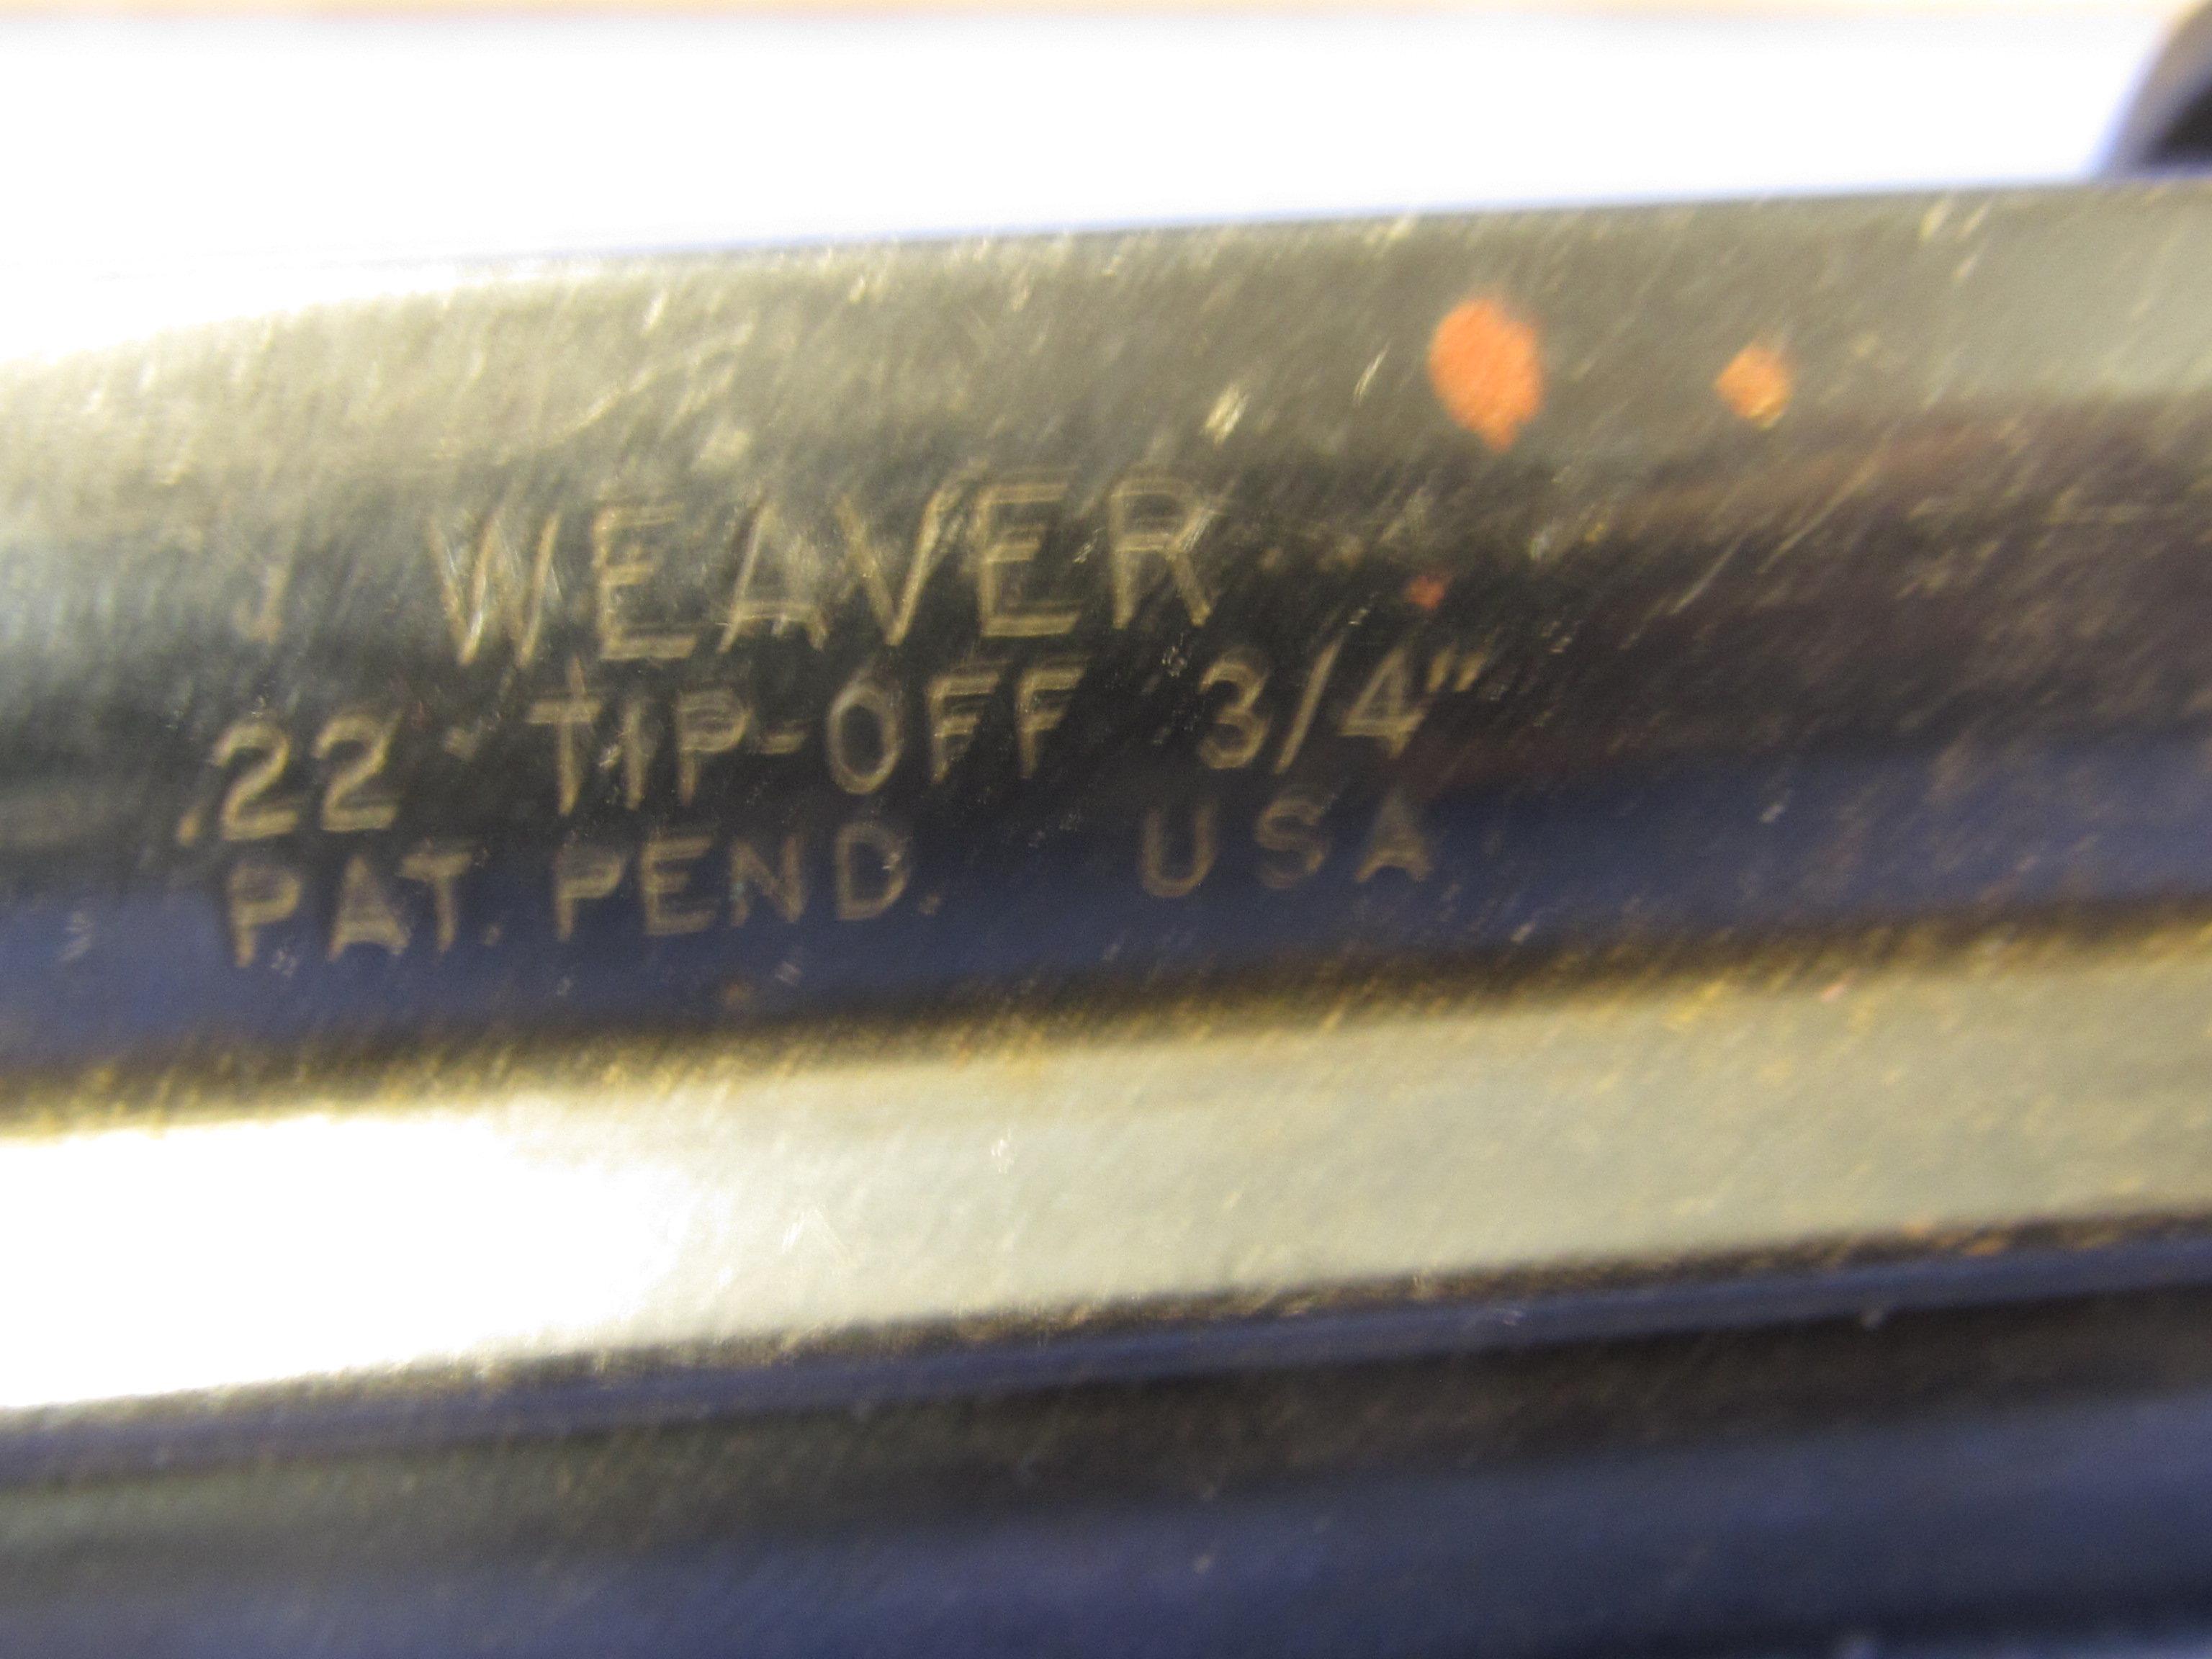 Vintage Weaver .22 Tip-Off Scope Mount 3/4” Pat. Pend. USA